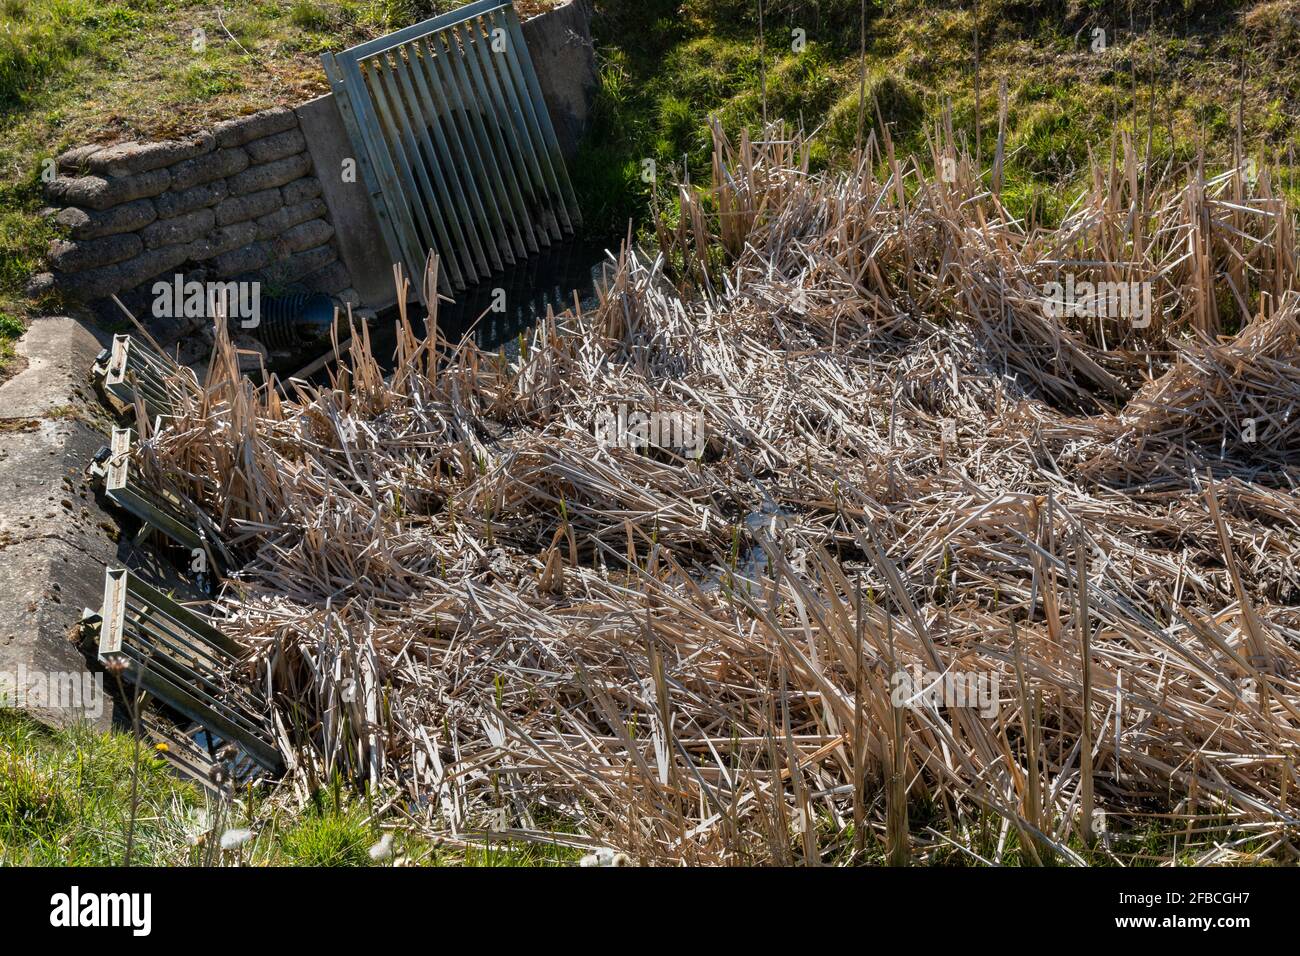 Große Metallgittern bedecken die Öffnungen der Abflussrohre in einen mit Schilf gefüllten Graben. Trumpington Meadows Country Park, Cambridge, Großbritannien. Stockfoto